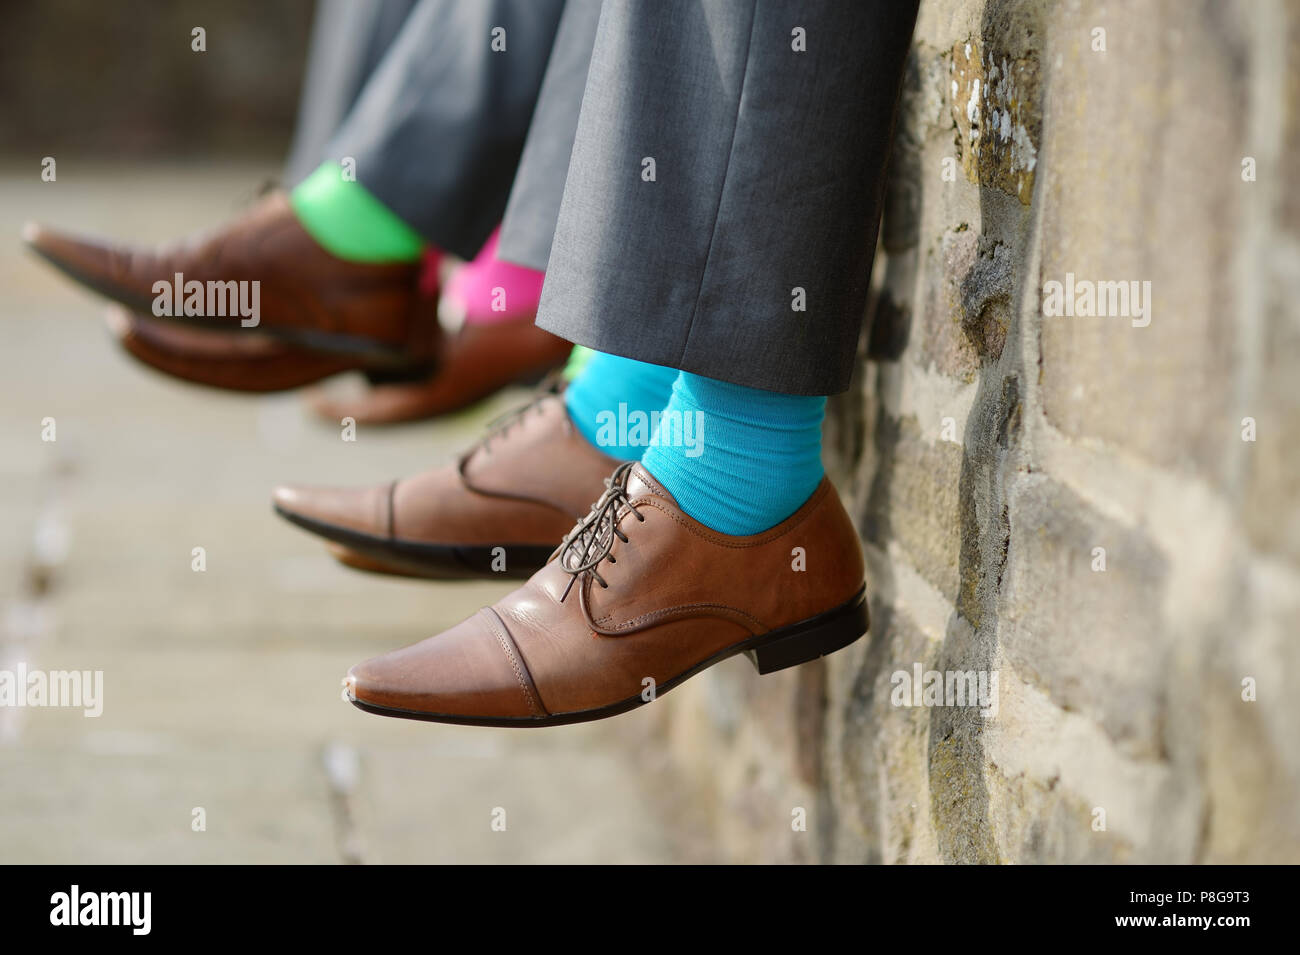 Funny chaussettes colorées de garçons Banque D'Images